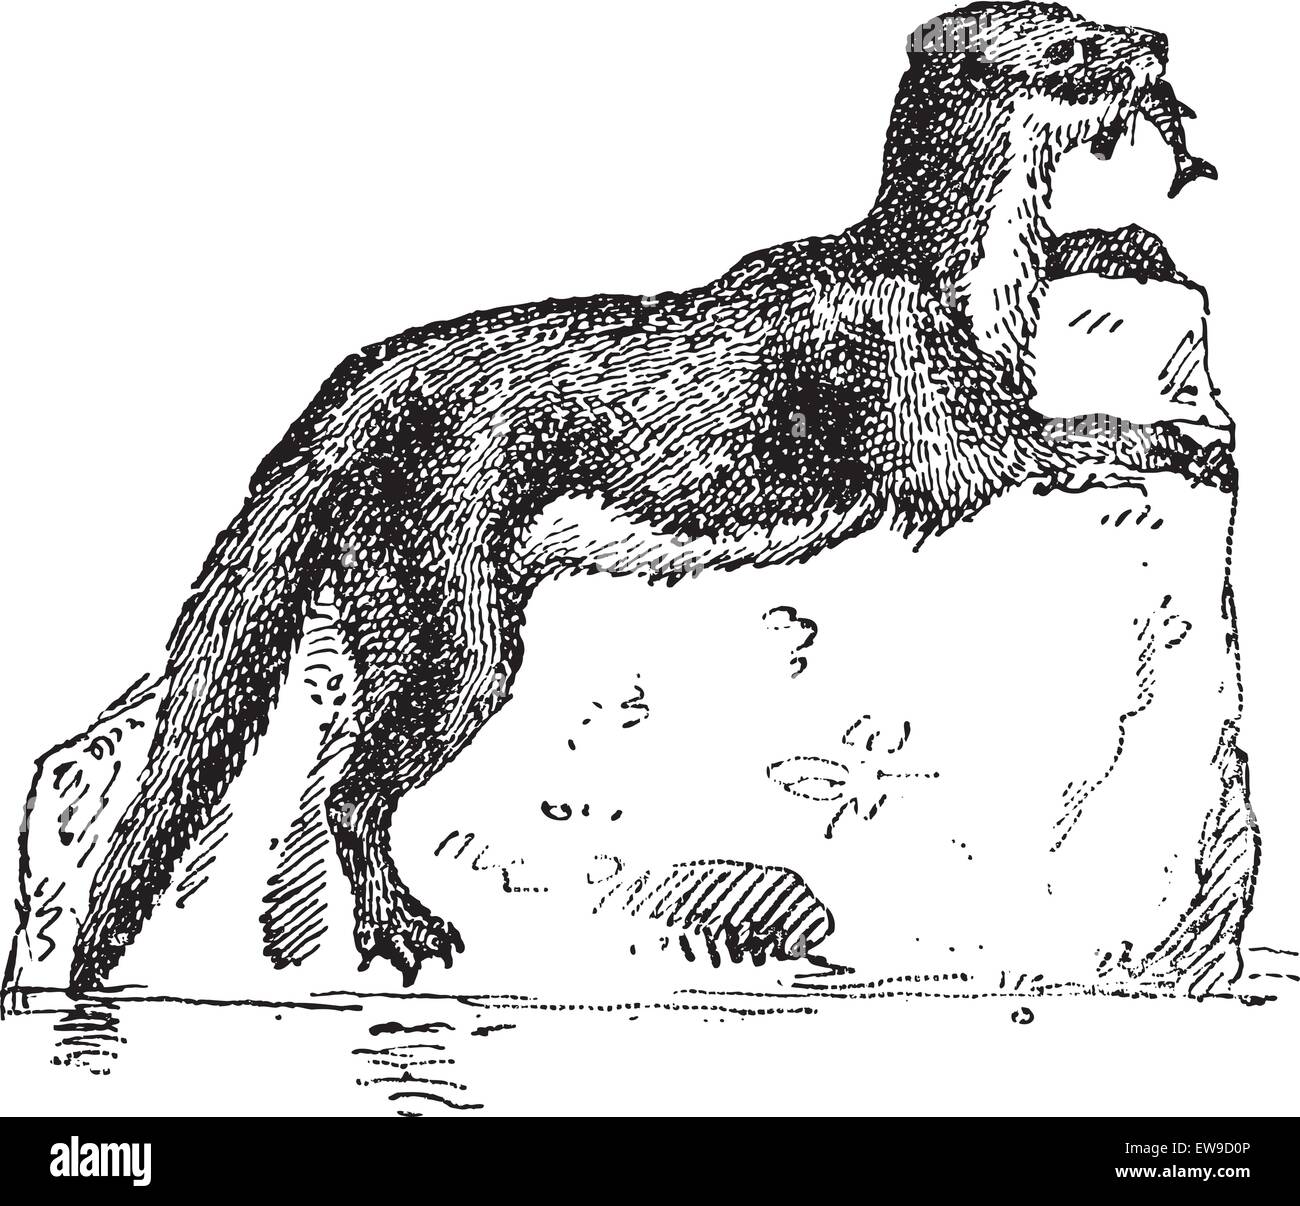 Eurasische Fischotter oder Lutra Lutra, graviert Vintage Illustration. Wörterbuch der Worte und Dinge - Larive und Fleury - 1895 Stock Vektor